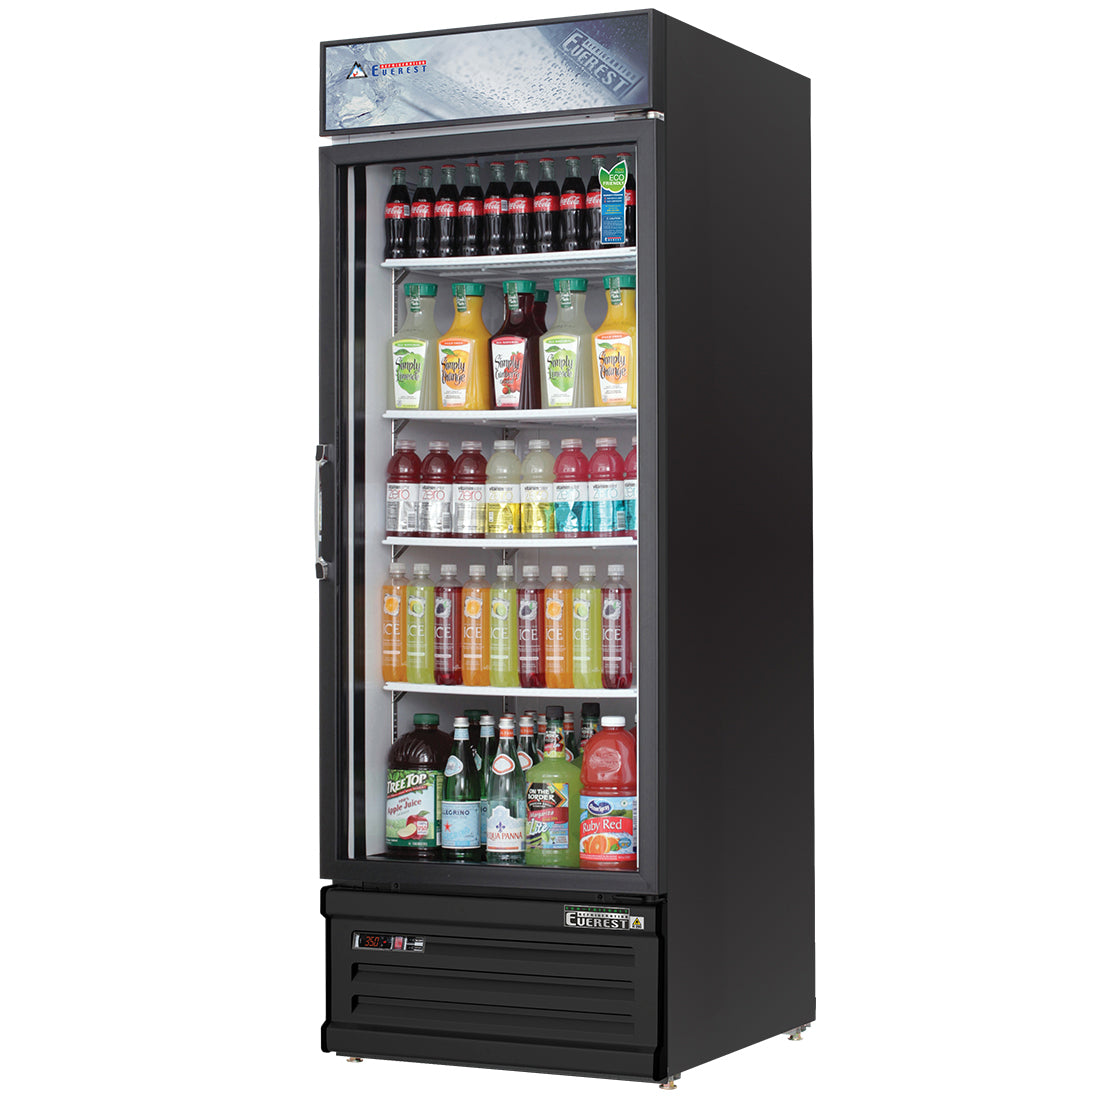 Everest 1 Door Refrigerator Merchandiser, 23 cu ft - Black Exterior Model EMGR24B